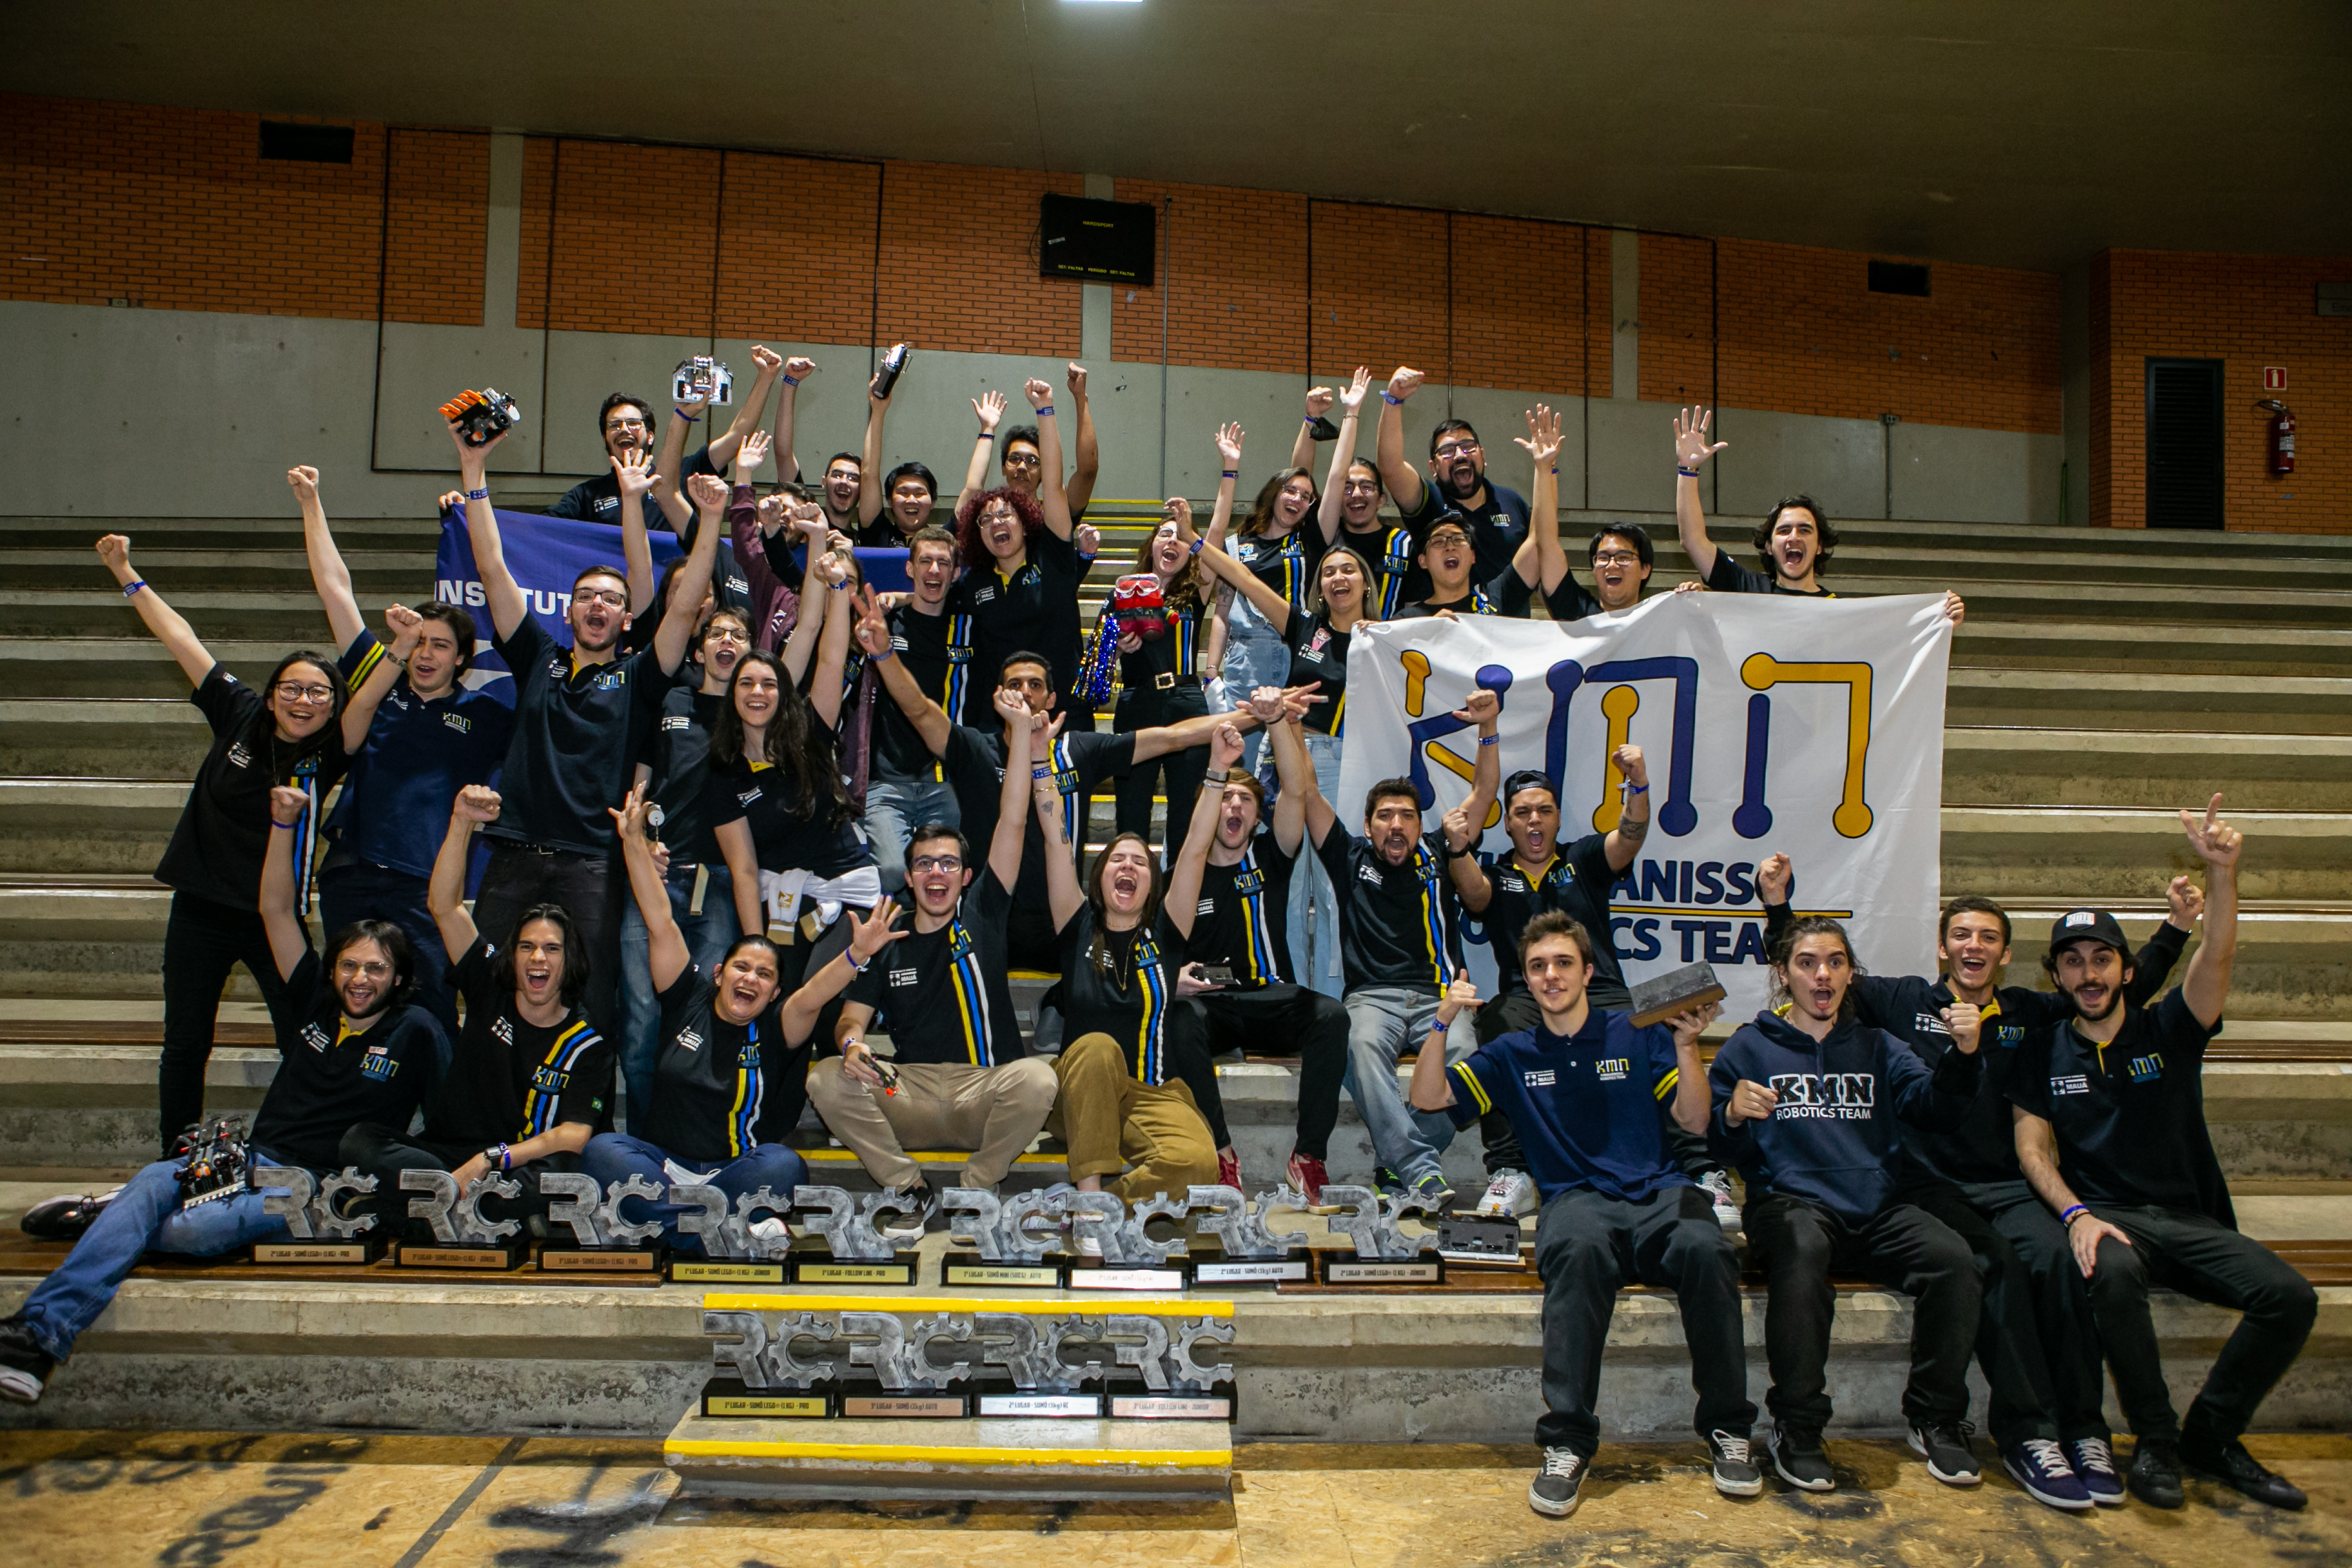 Equipe Kimauánisso conquistou a maior quantidade de troféus durante o RoboChallenge Brasil by Mauá